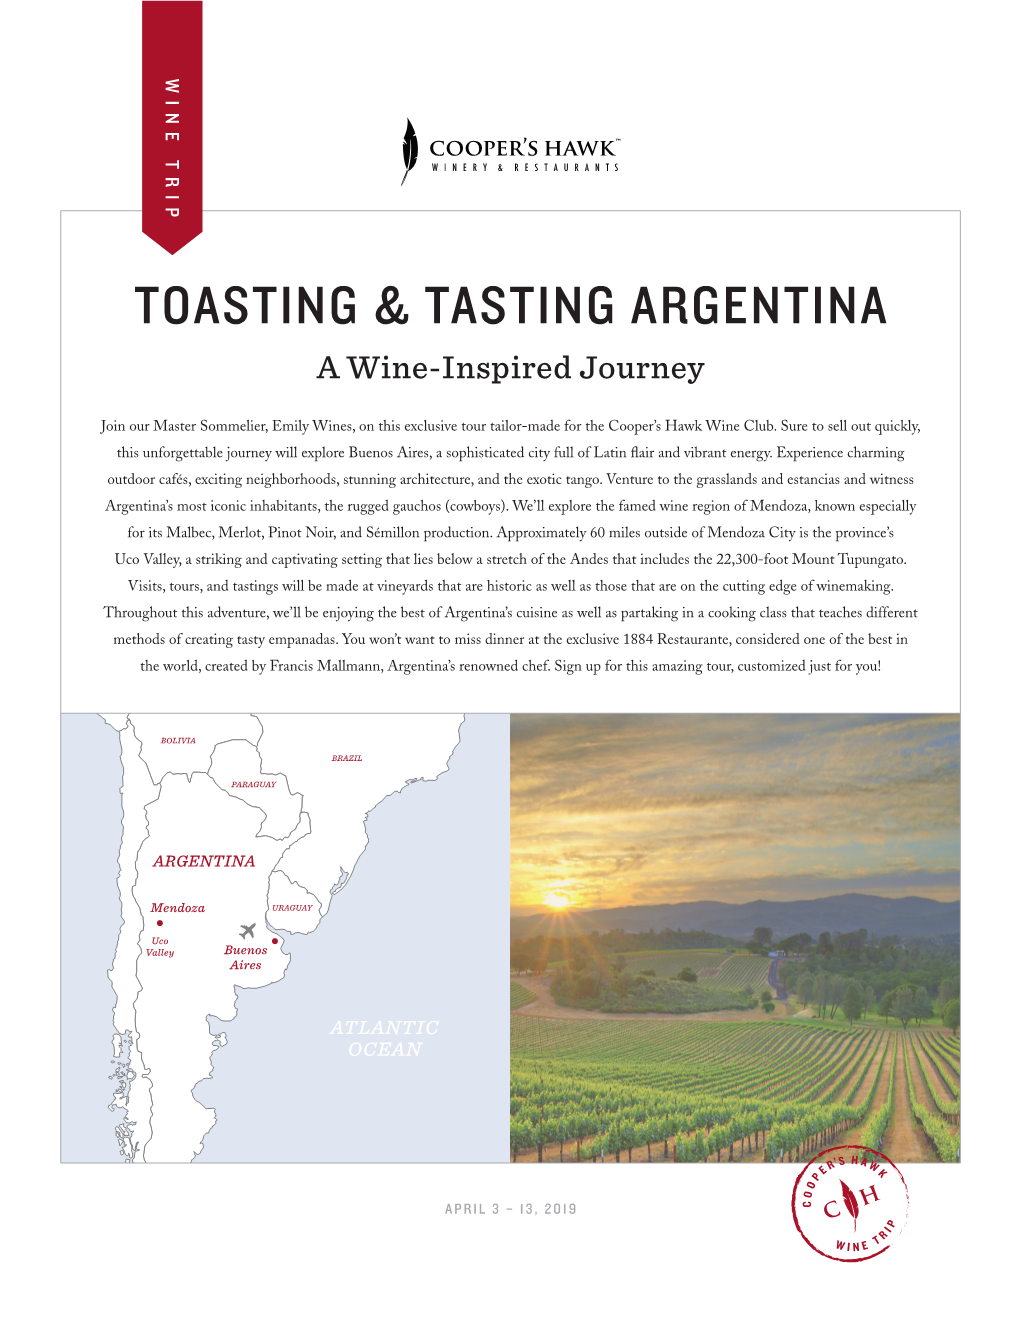 Toasting & Tasting Argentina